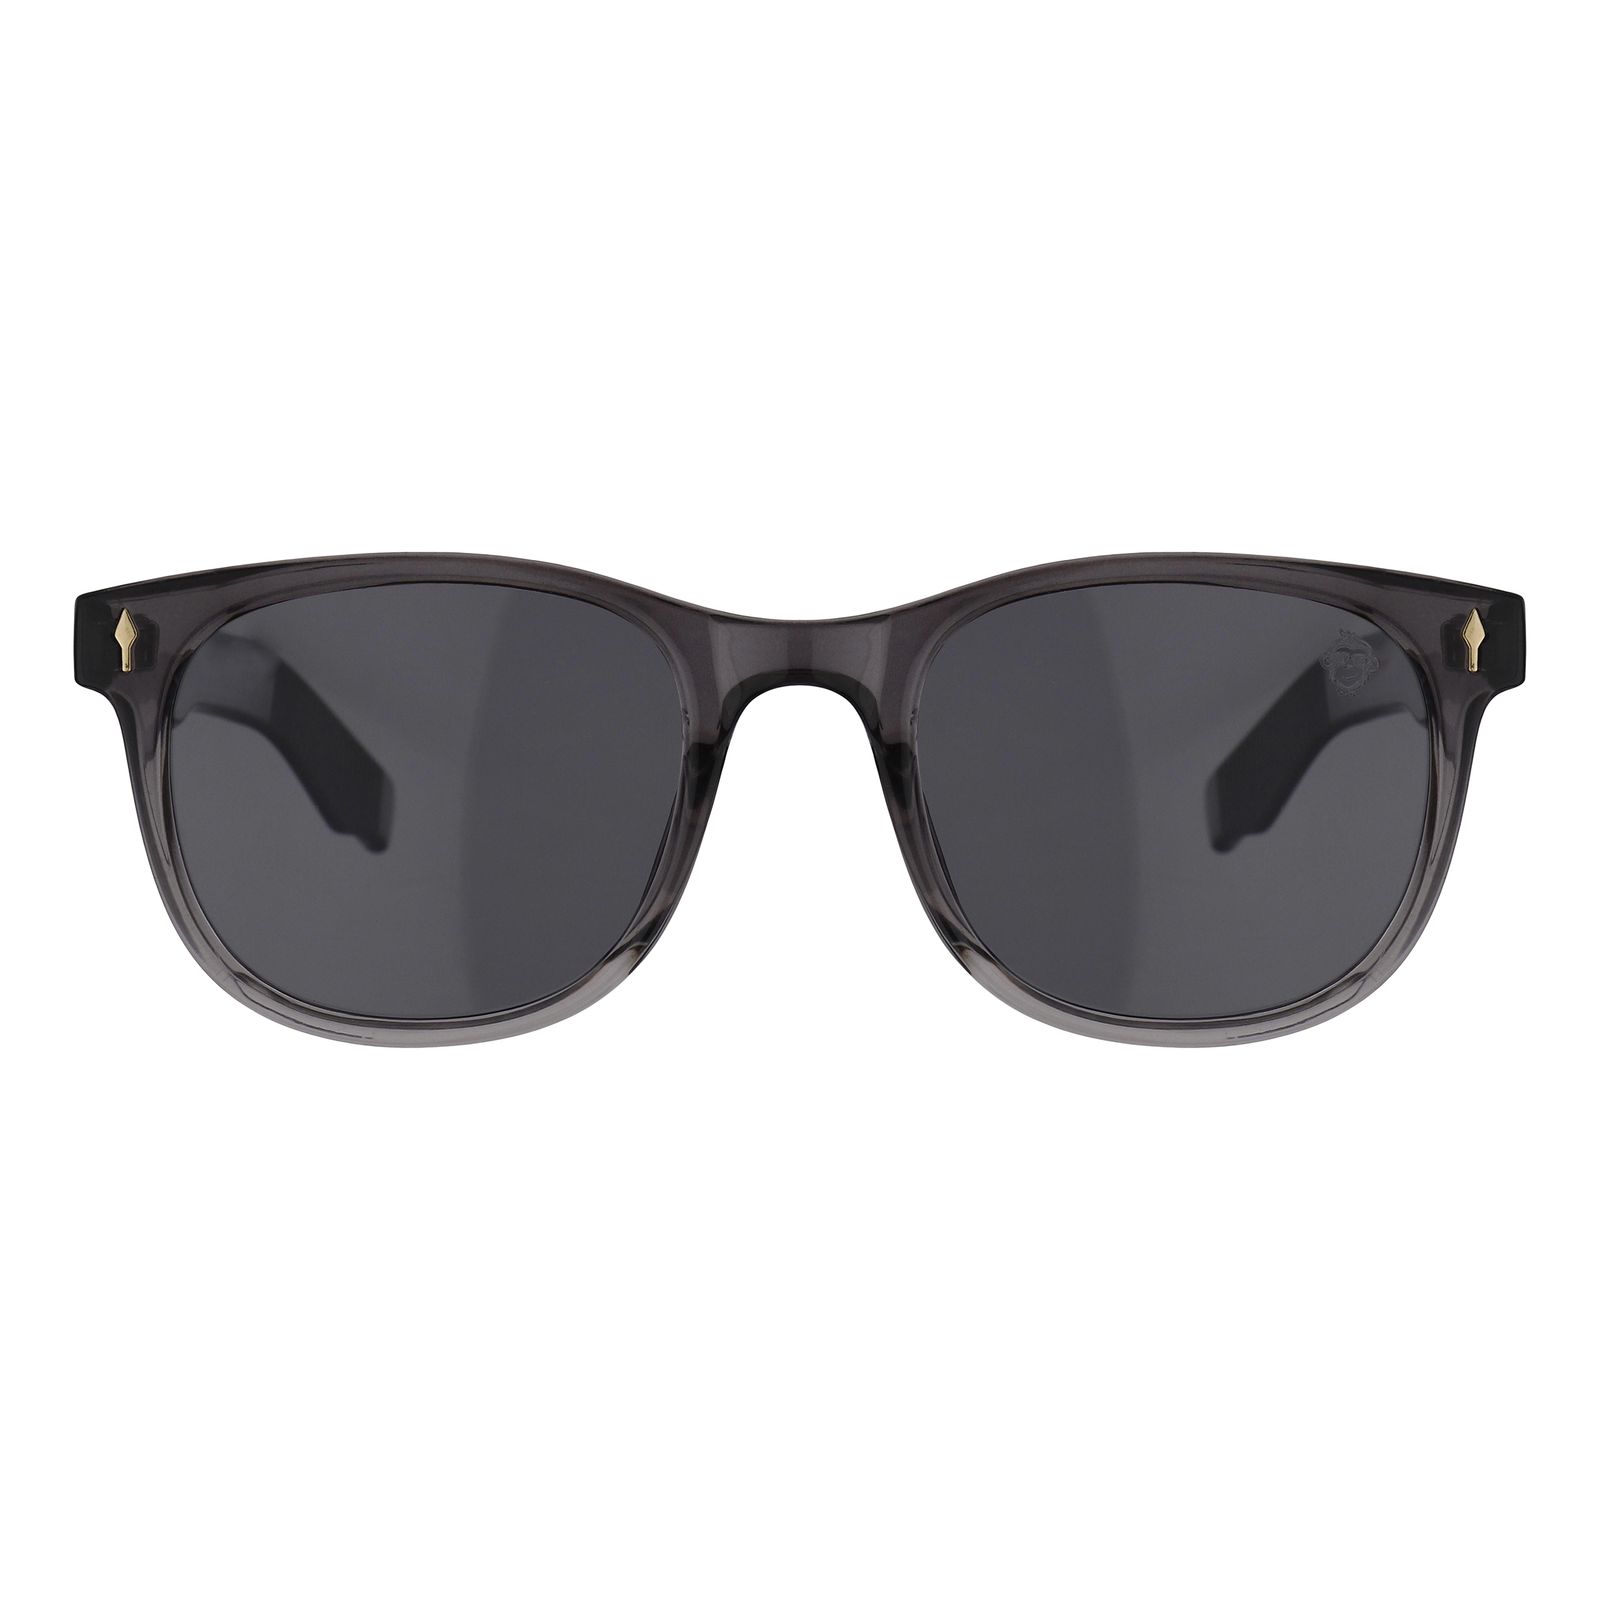 عینک آفتابی مستر مانکی مدل 6014 gr -  - 1